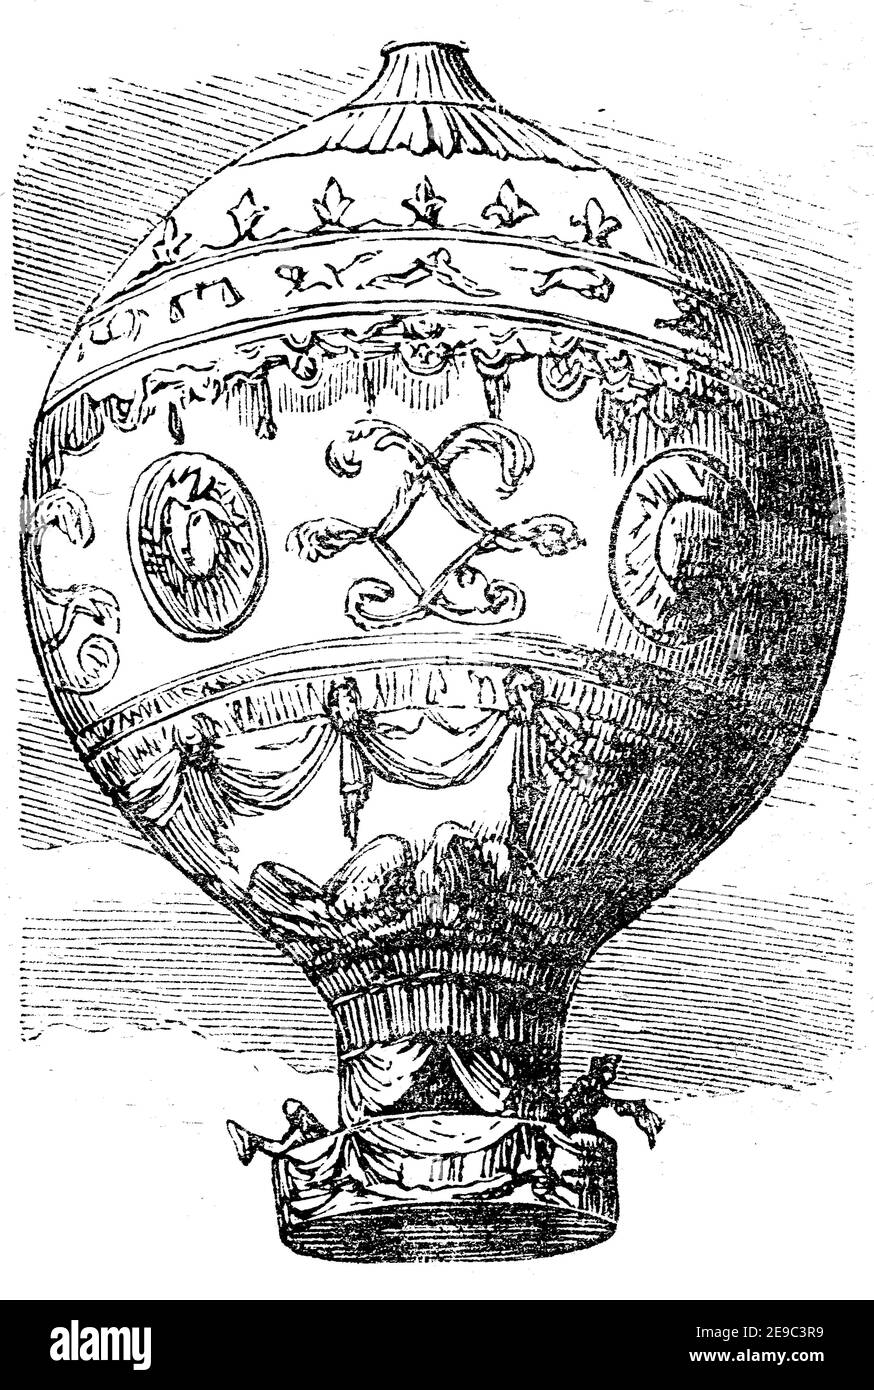 Ballon für die erste Flugreise von Pilatre de Rozier und d'Arlande führte Pilatre am 21. November 1783 die erste freie Ballonfahrt in der Geschichte der Menschheit durch. Während des 25-minütigen Fluges schwebten er und Francois d'Arlands 10 km nach dem Start / Ballon für die erste Luftreise von Pilatre de Rozier und d'Arlande, am 21. November 1783 führte Pilatre die erste Freiballonfahrt in der Geschichte der Menschheit durch. Bei der 25-minütigen Fahrt schweben er zusammen mit Francois d’Arlands nach dem Start 10 km, Historisch, historisch, digital verbesserte Reproduktion eines Originals aus dem Jahr 19th Stockfoto